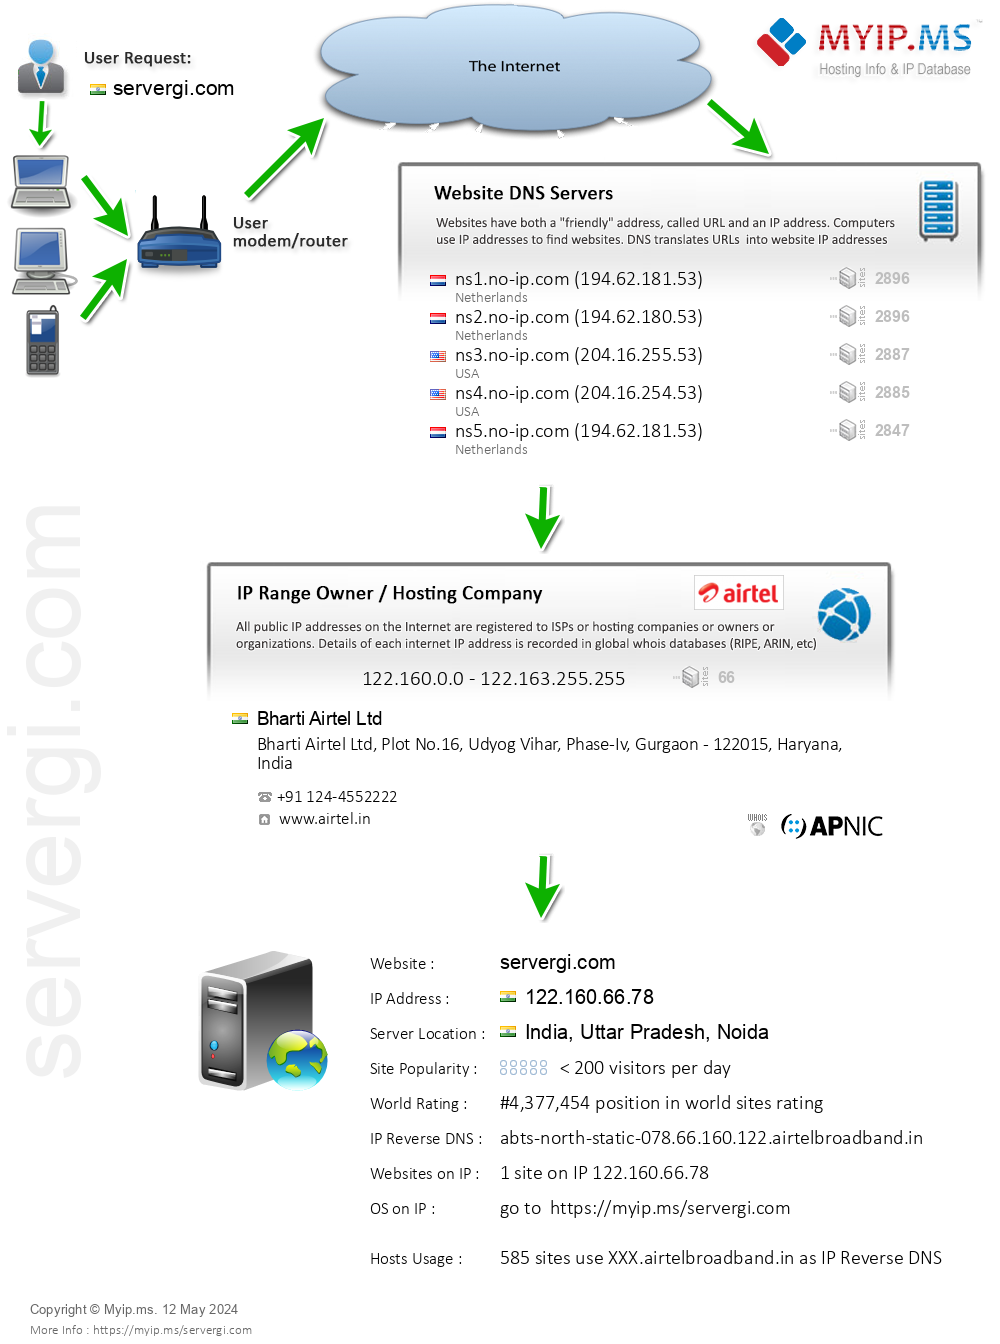 Servergi.com - Website Hosting Visual IP Diagram